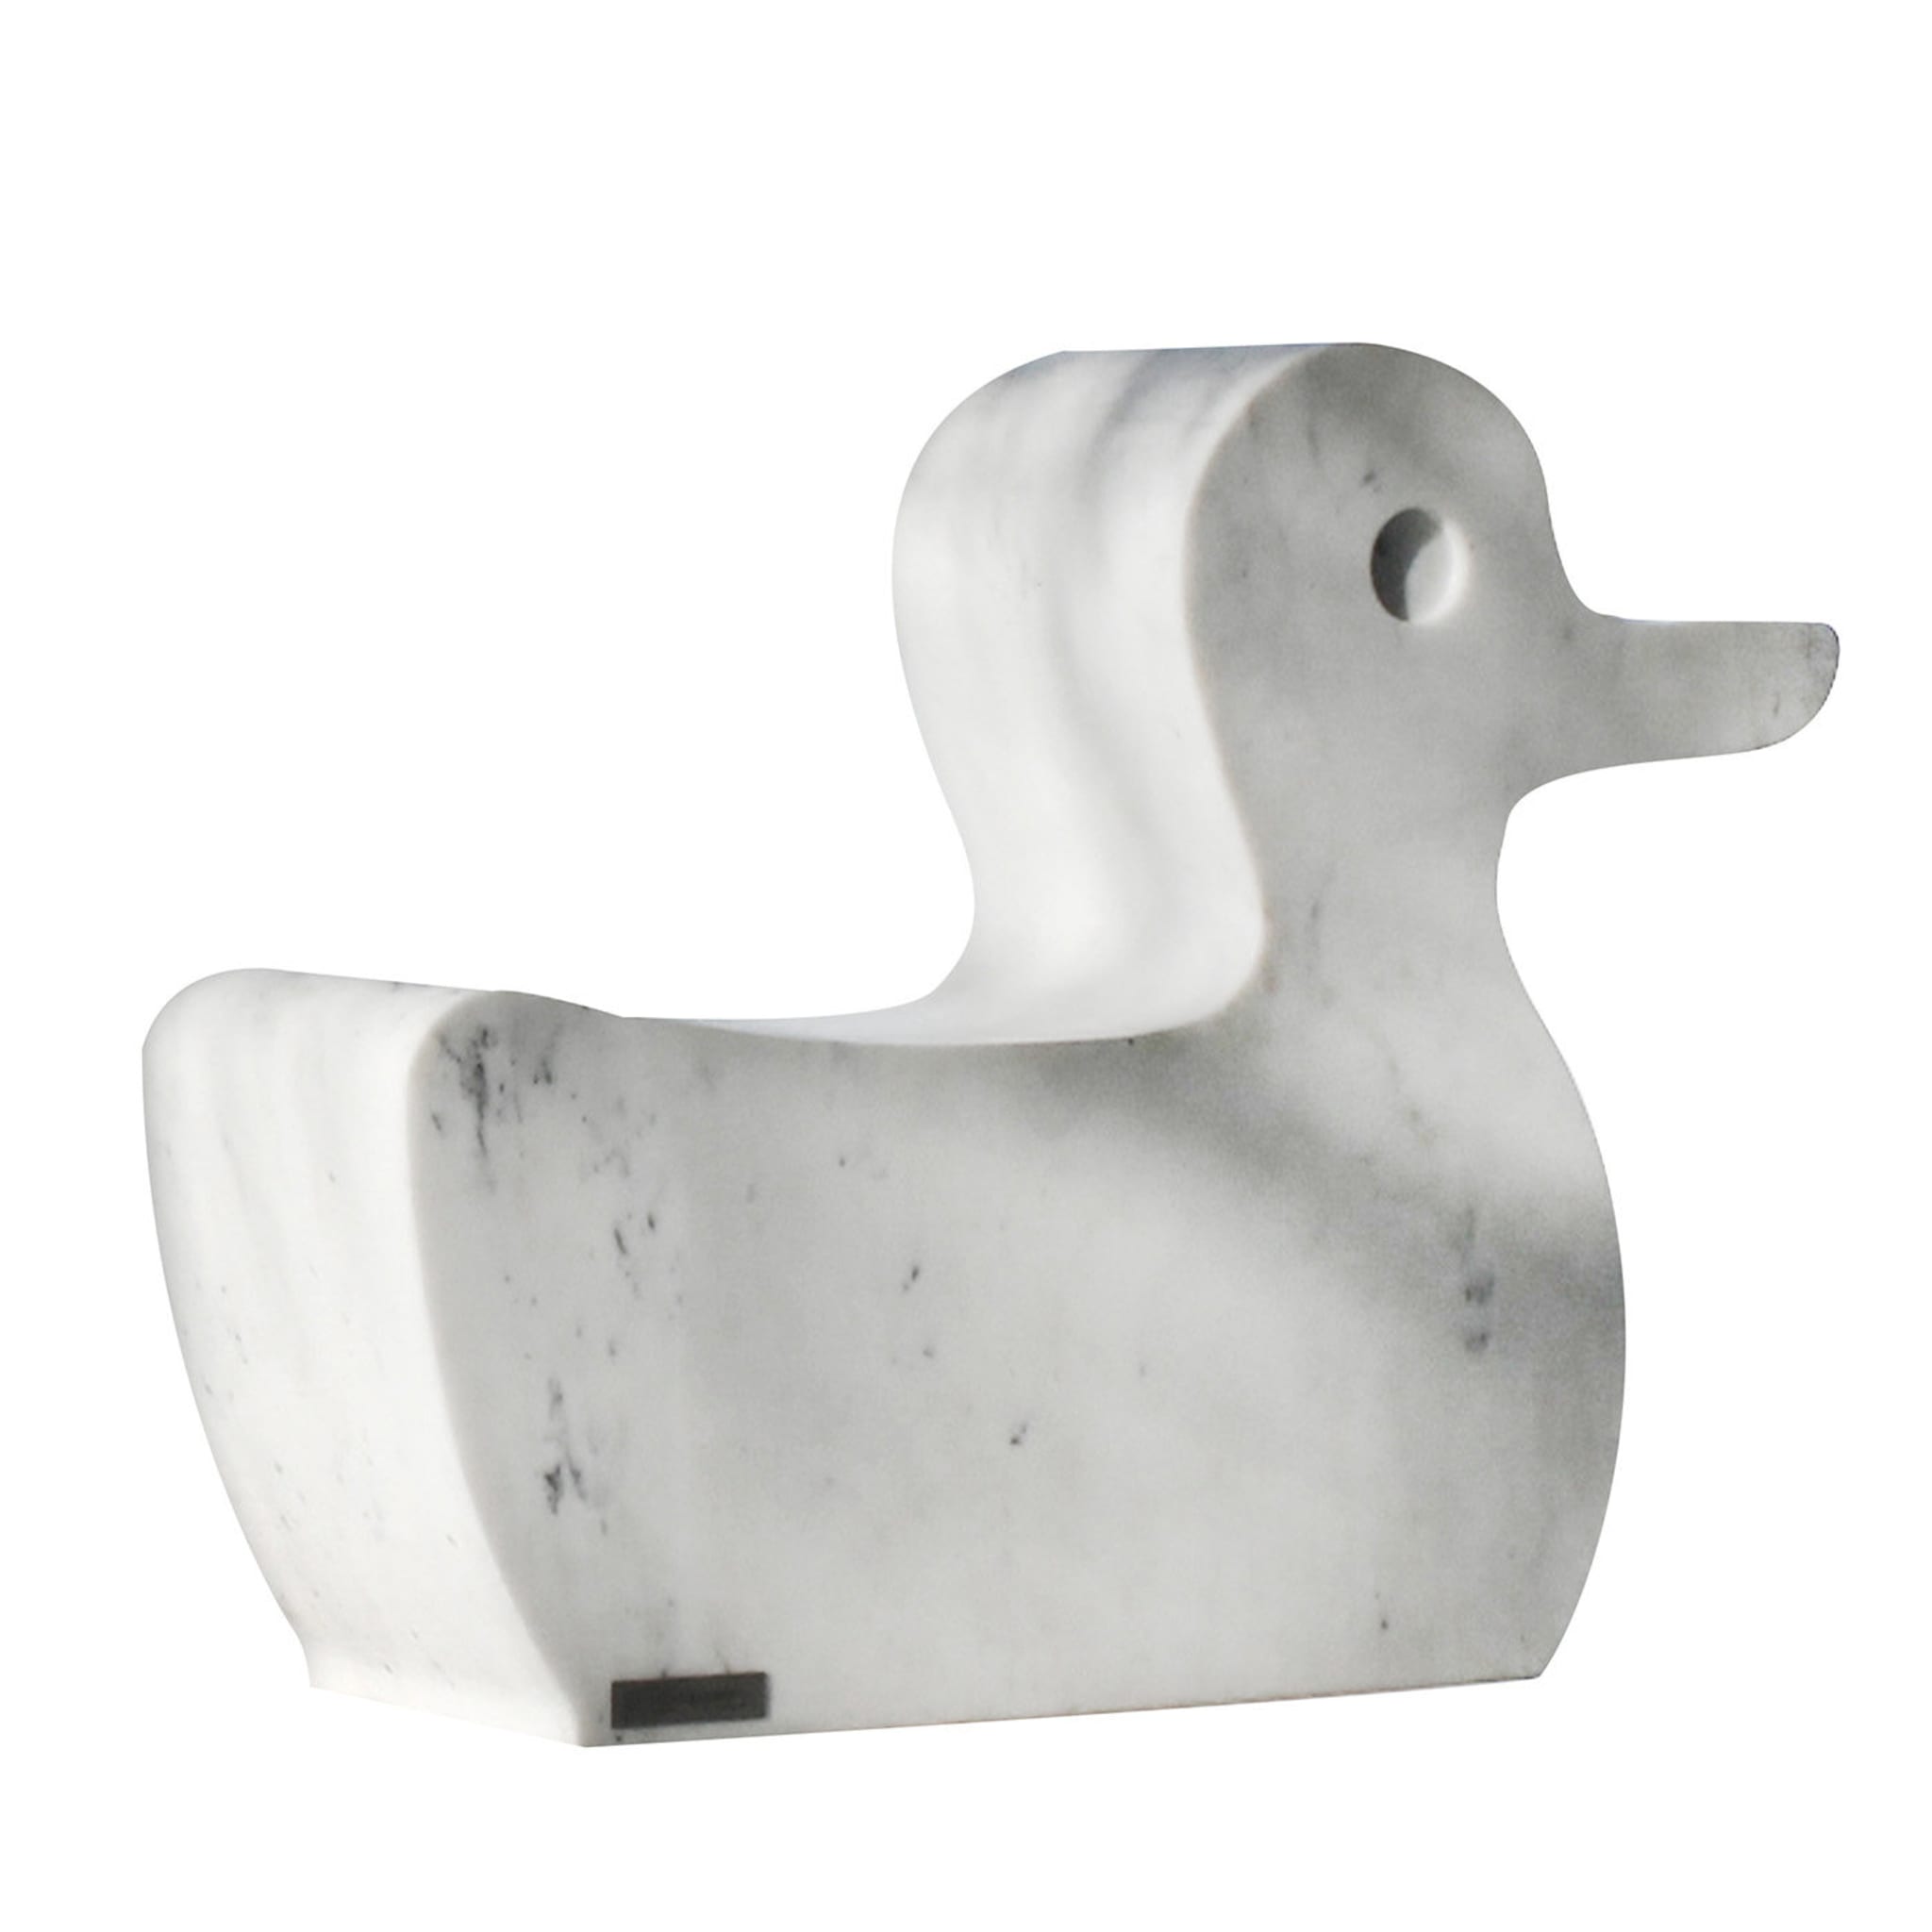 Skulptur einer Ente aus Carrara-Marmor von Eugenio Biselli, Paonazzo  - Hauptansicht